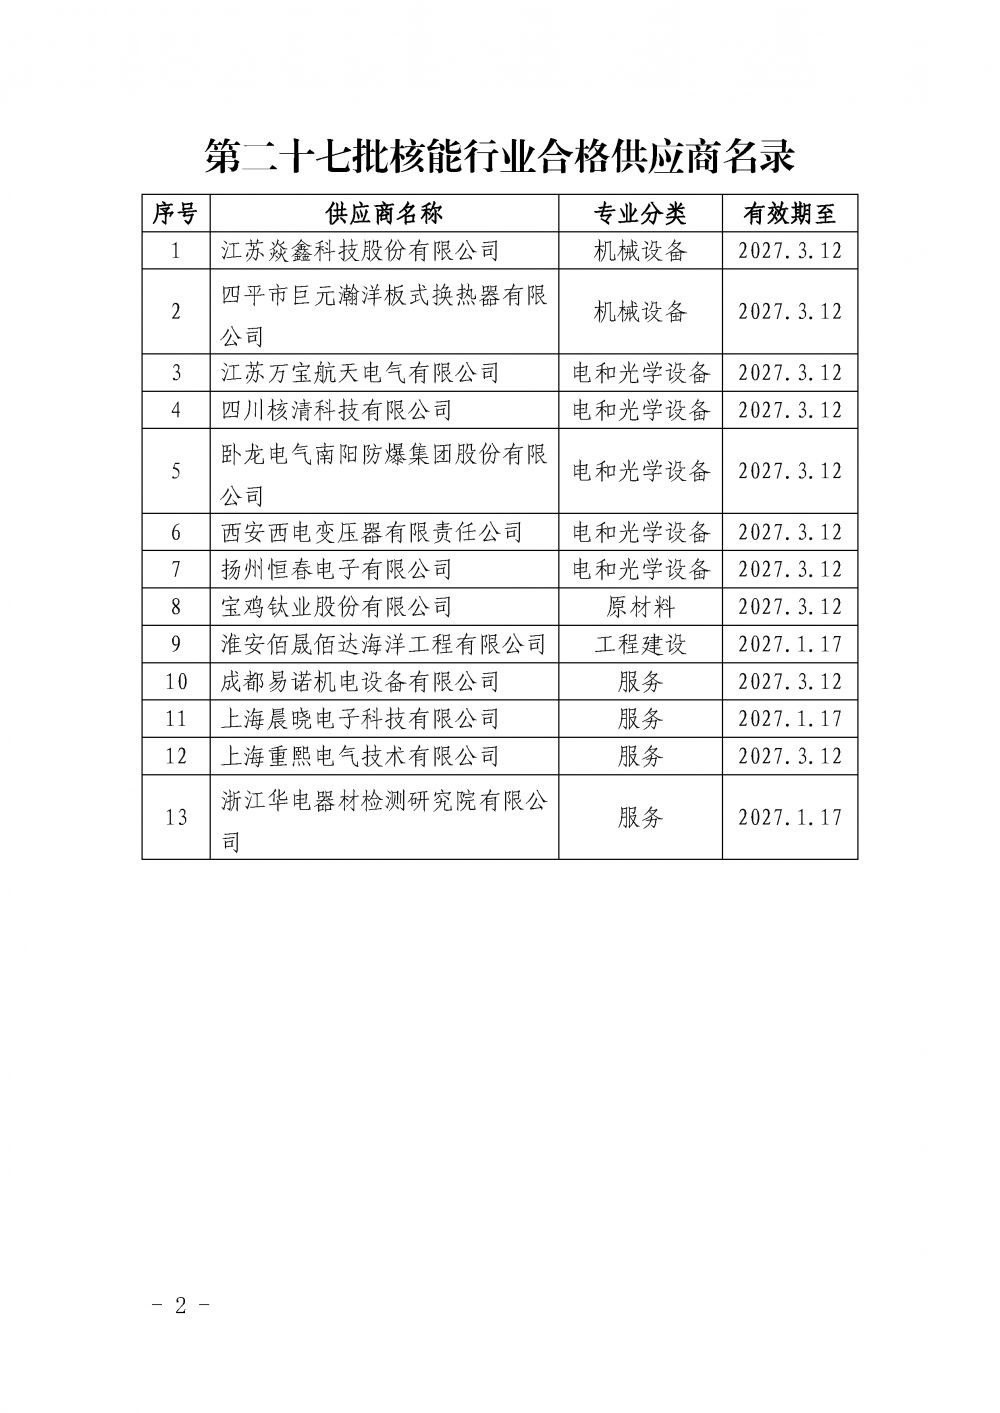 中国核能行业协会关于发布第二十七批核能行业合格供应商名录的公告_页面_2.png